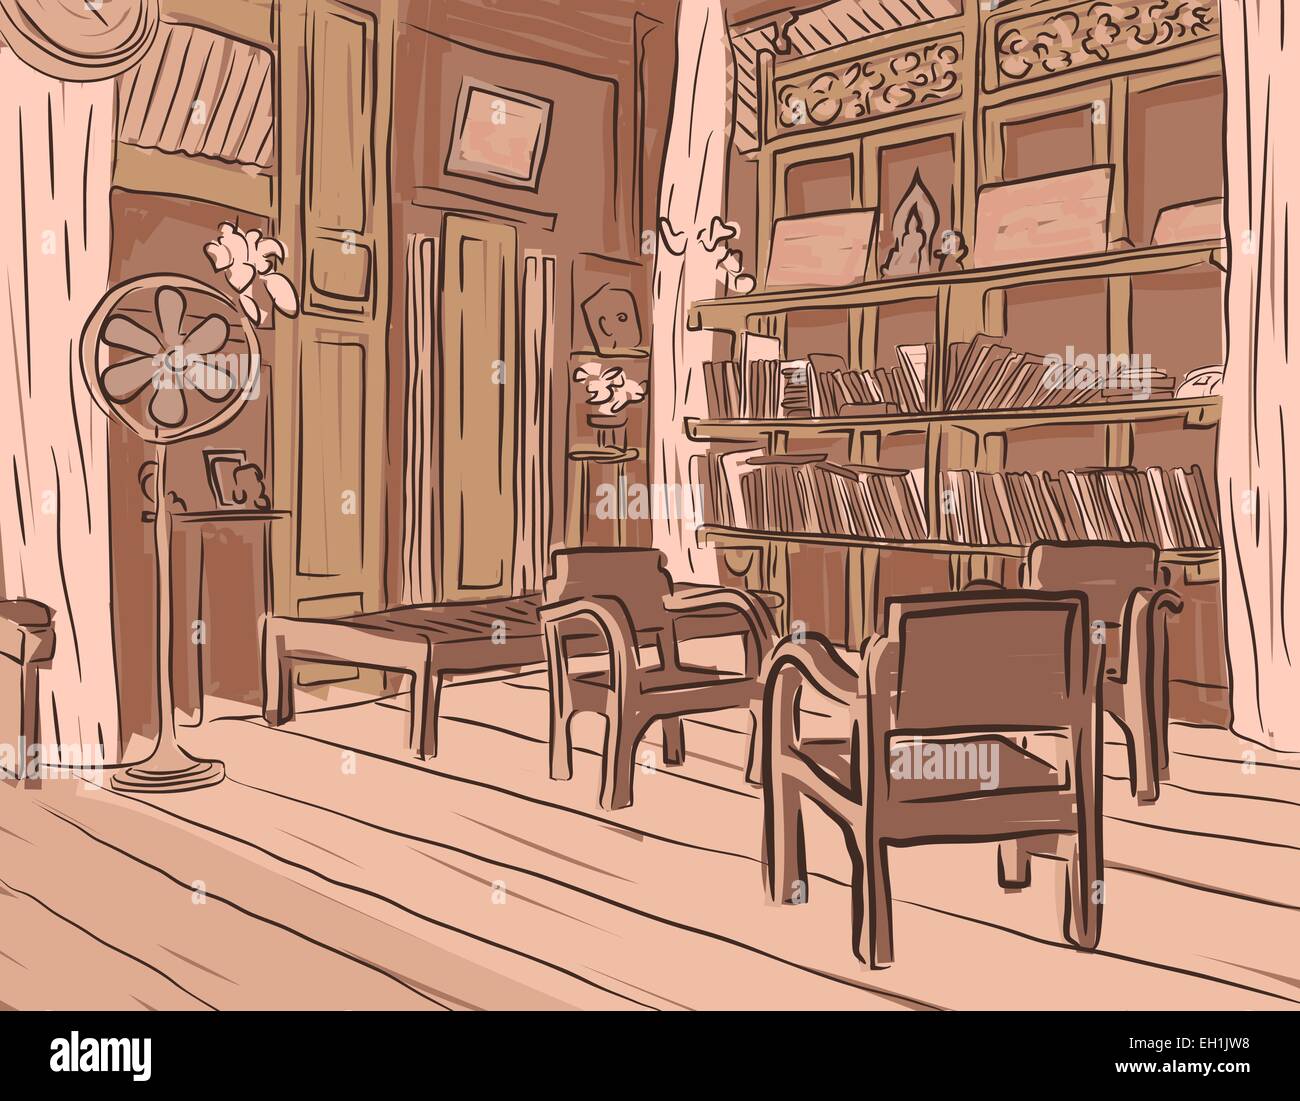 Bearbeitbares Vektor braune Skizze eines alten Lesesaal oder Wohnzimmer mit Holzmöbeln Stock Vektor